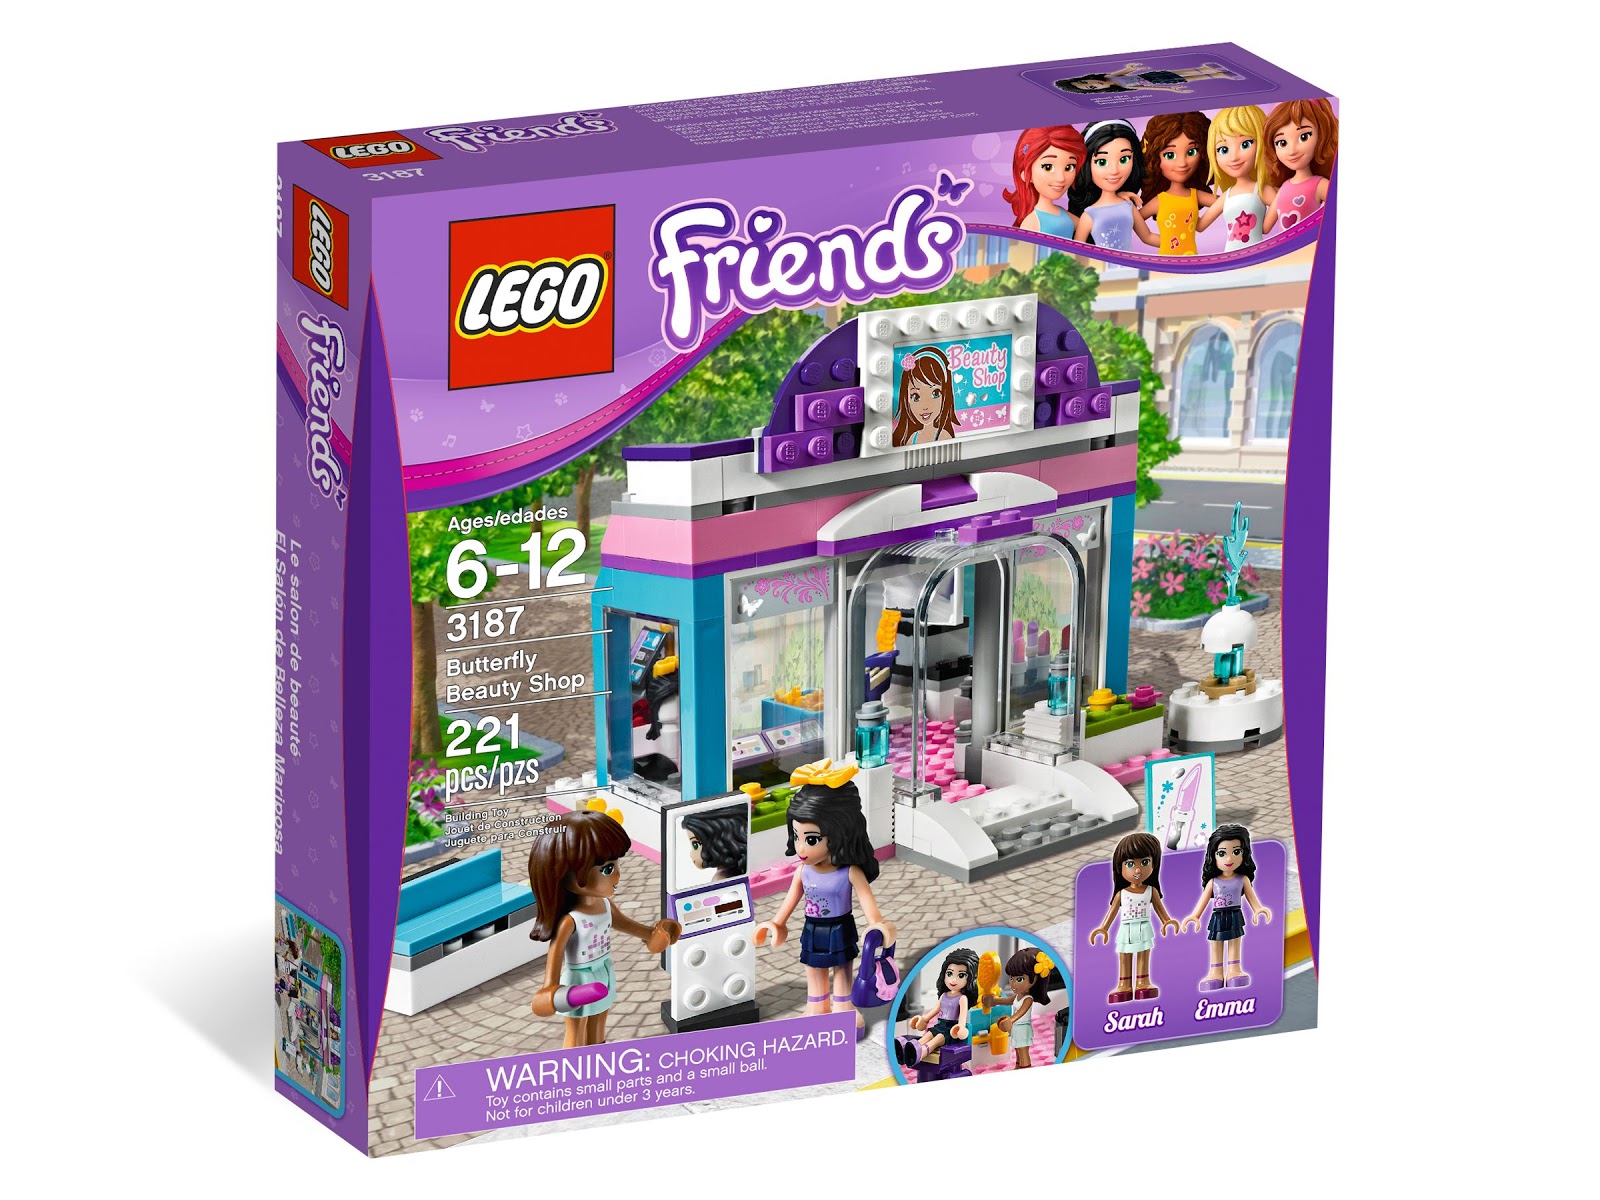 Brick Friends: LEGO Friends 3187 Butterfly Beauty Shop